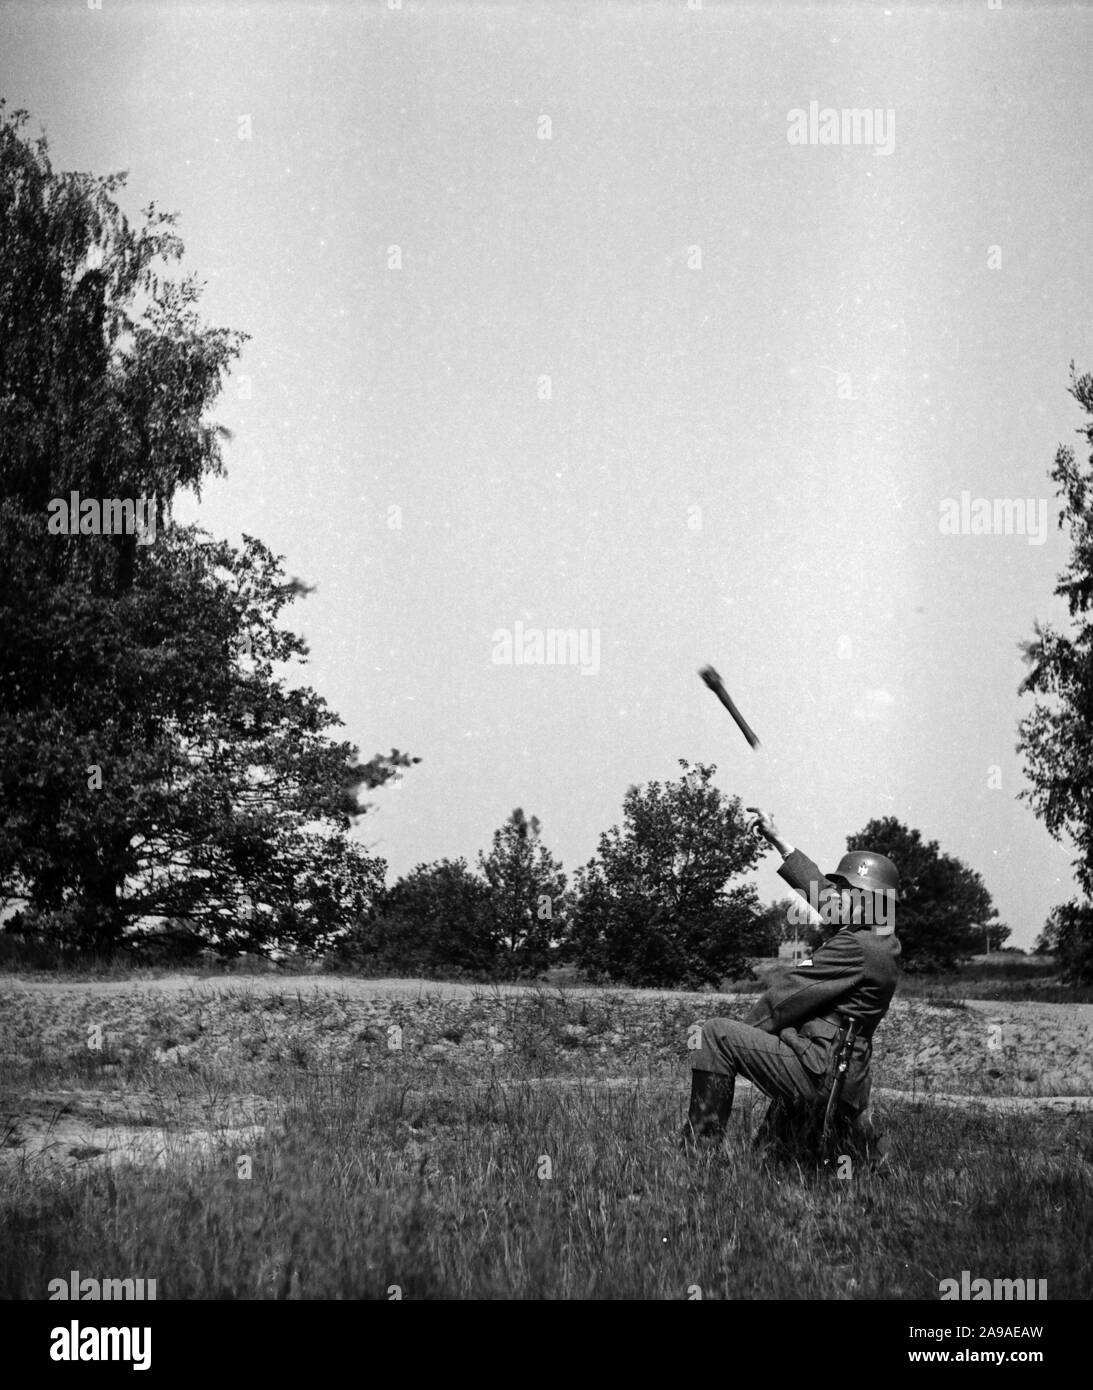 Un soldat de la Wehrmacht throing une grenade à main sur un exercice, l'Allemagne des années 1930. Banque D'Images